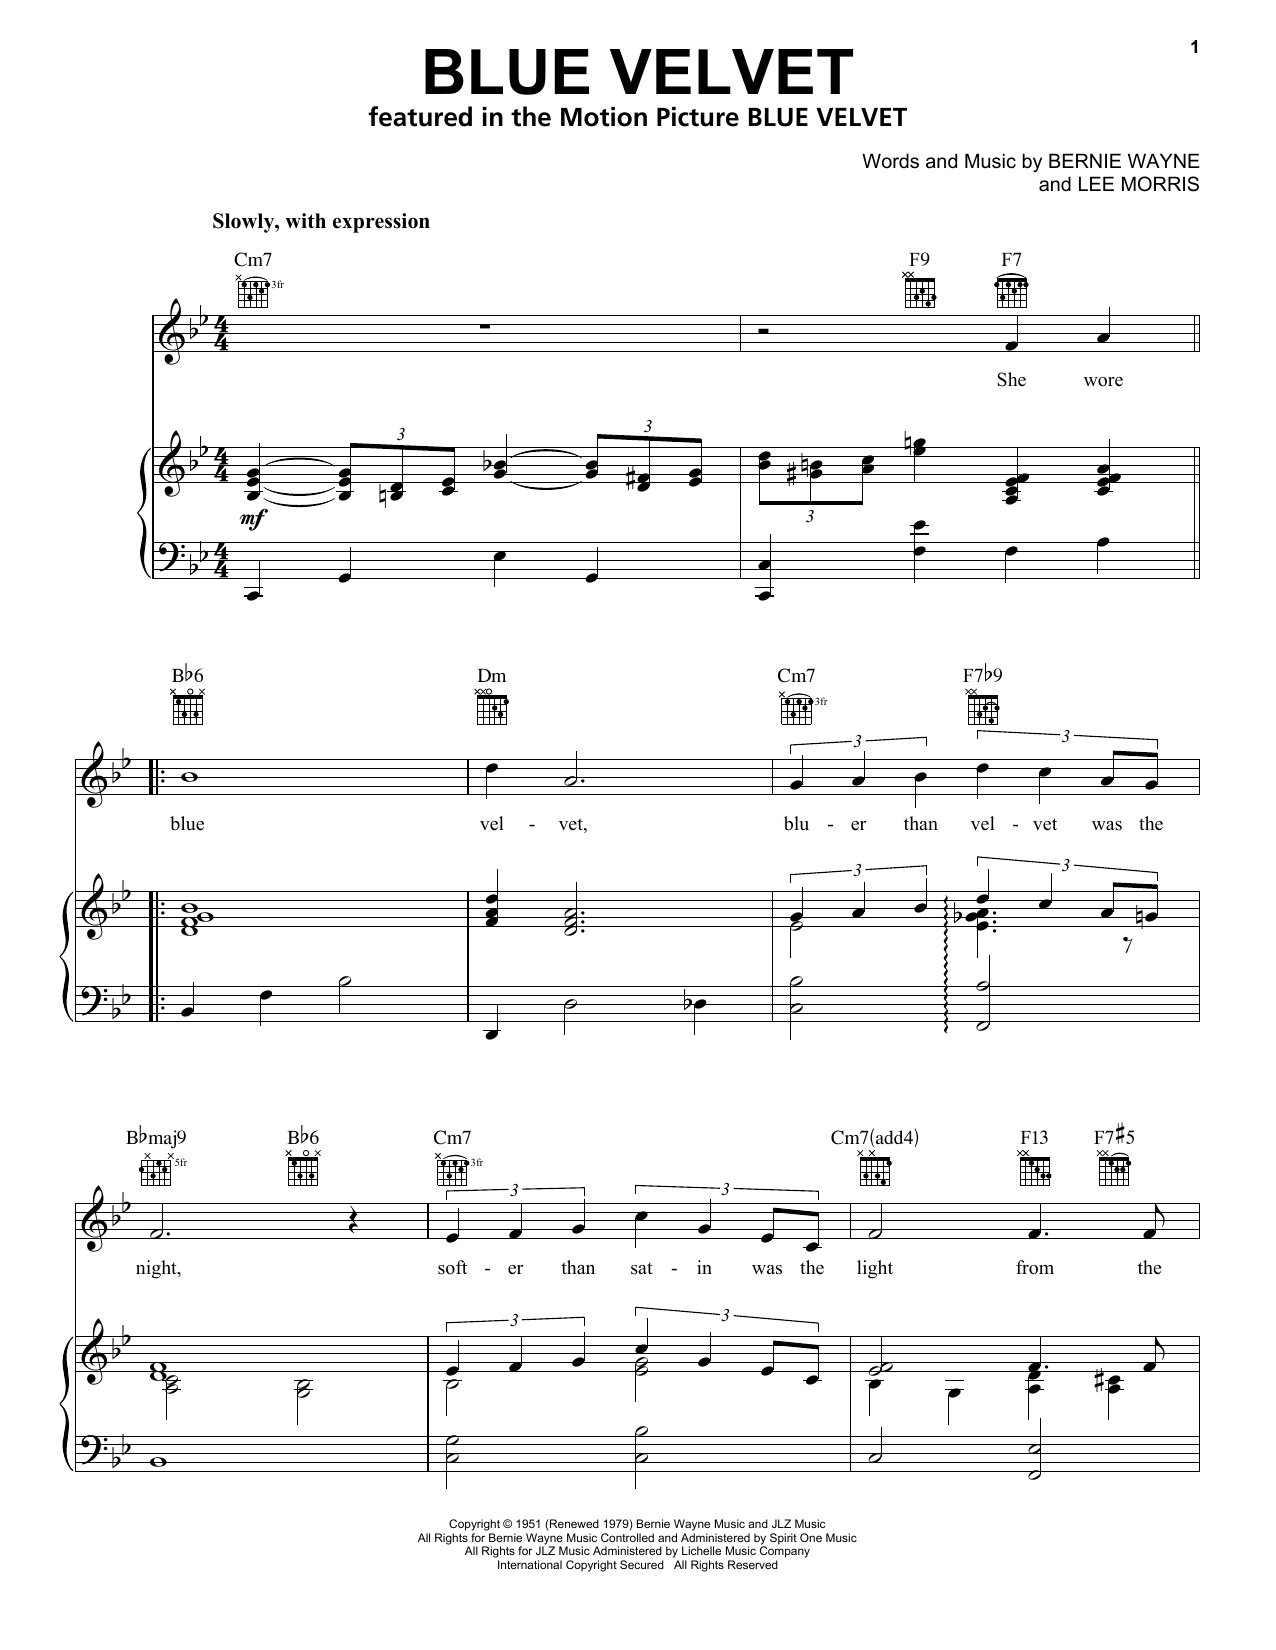 Bobby Vinton Blue Velvet Sheet Music Notes & Chords for Lyrics & Chords - Download or Print PDF